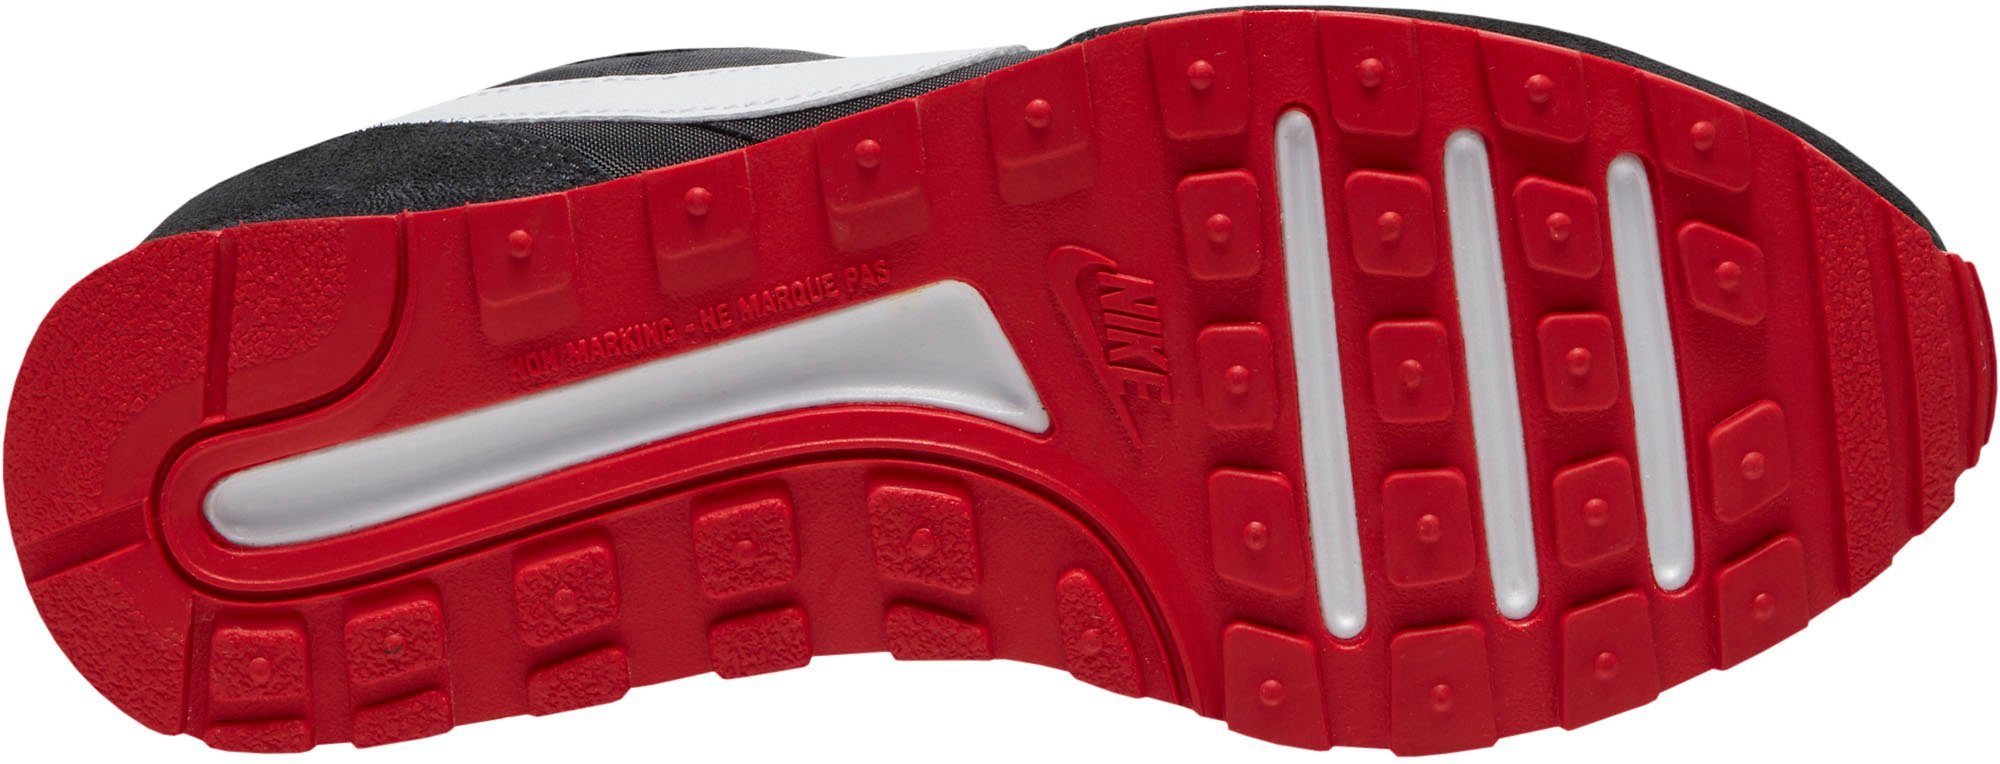 VALIANT BLACK-WHITE-DK-SMOKE-GREY-UNIVERSITY-RED MD Sneaker (GS) Nike Sportswear